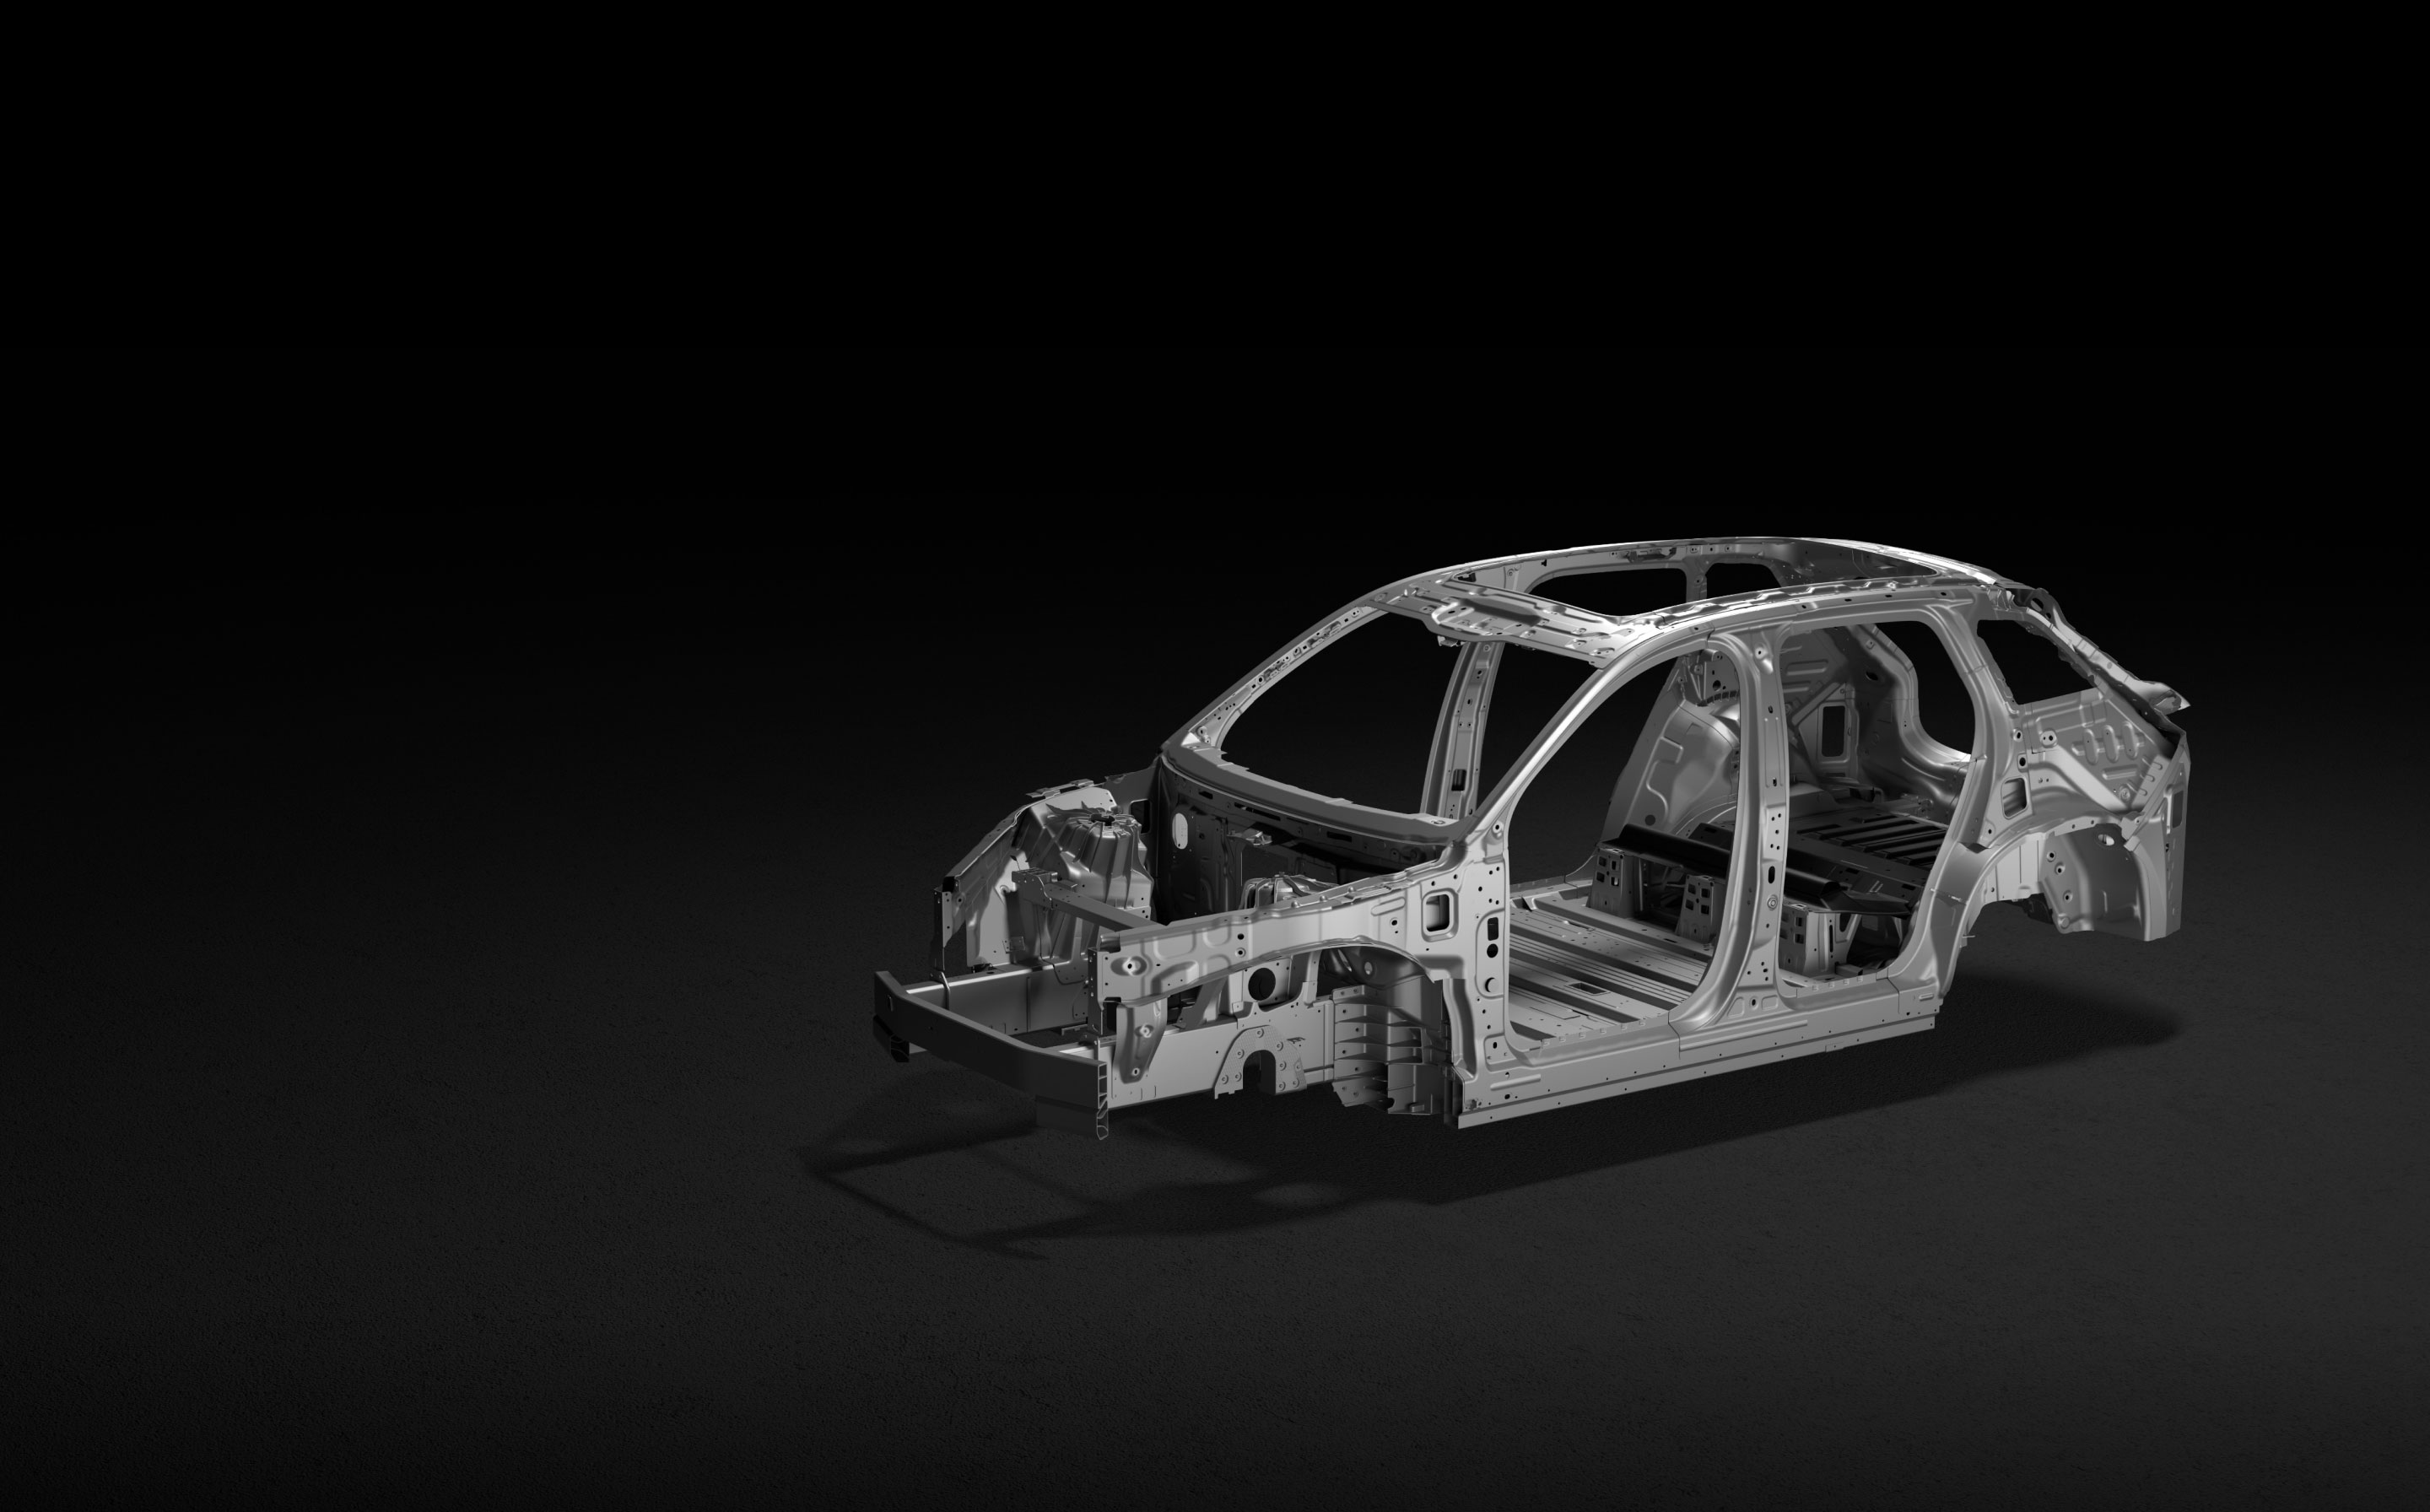 高强度铝合金及碳纤维混淆车身架构-尊龙凯时ES7-NIO尊龙凯时官网